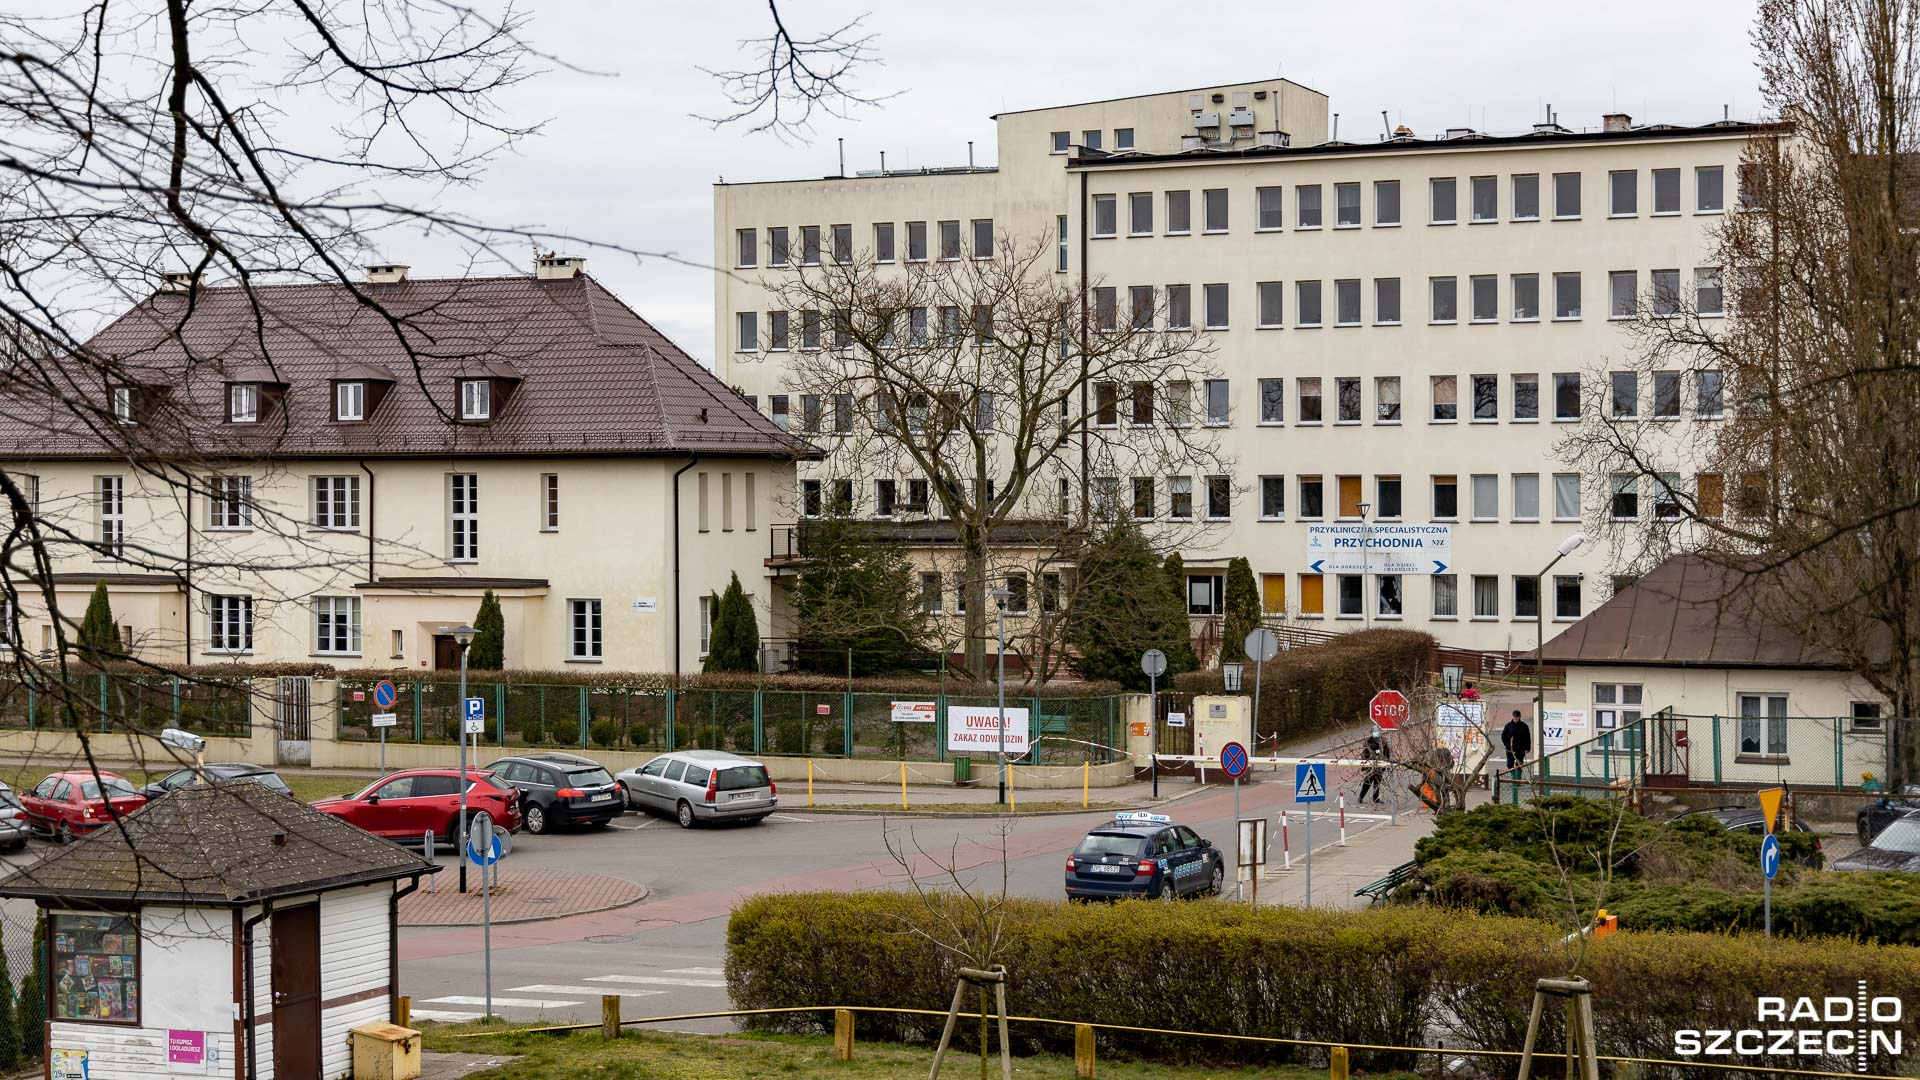 Szpital przy Unii Lubelskiej w Szczecinie informuje, że wstrzymuje realizację świadczeń opieki zdrowotnej w trybie planowym. Powód Przekroczenia limitu świadczeń finansowanych w ramach ryczałtu.